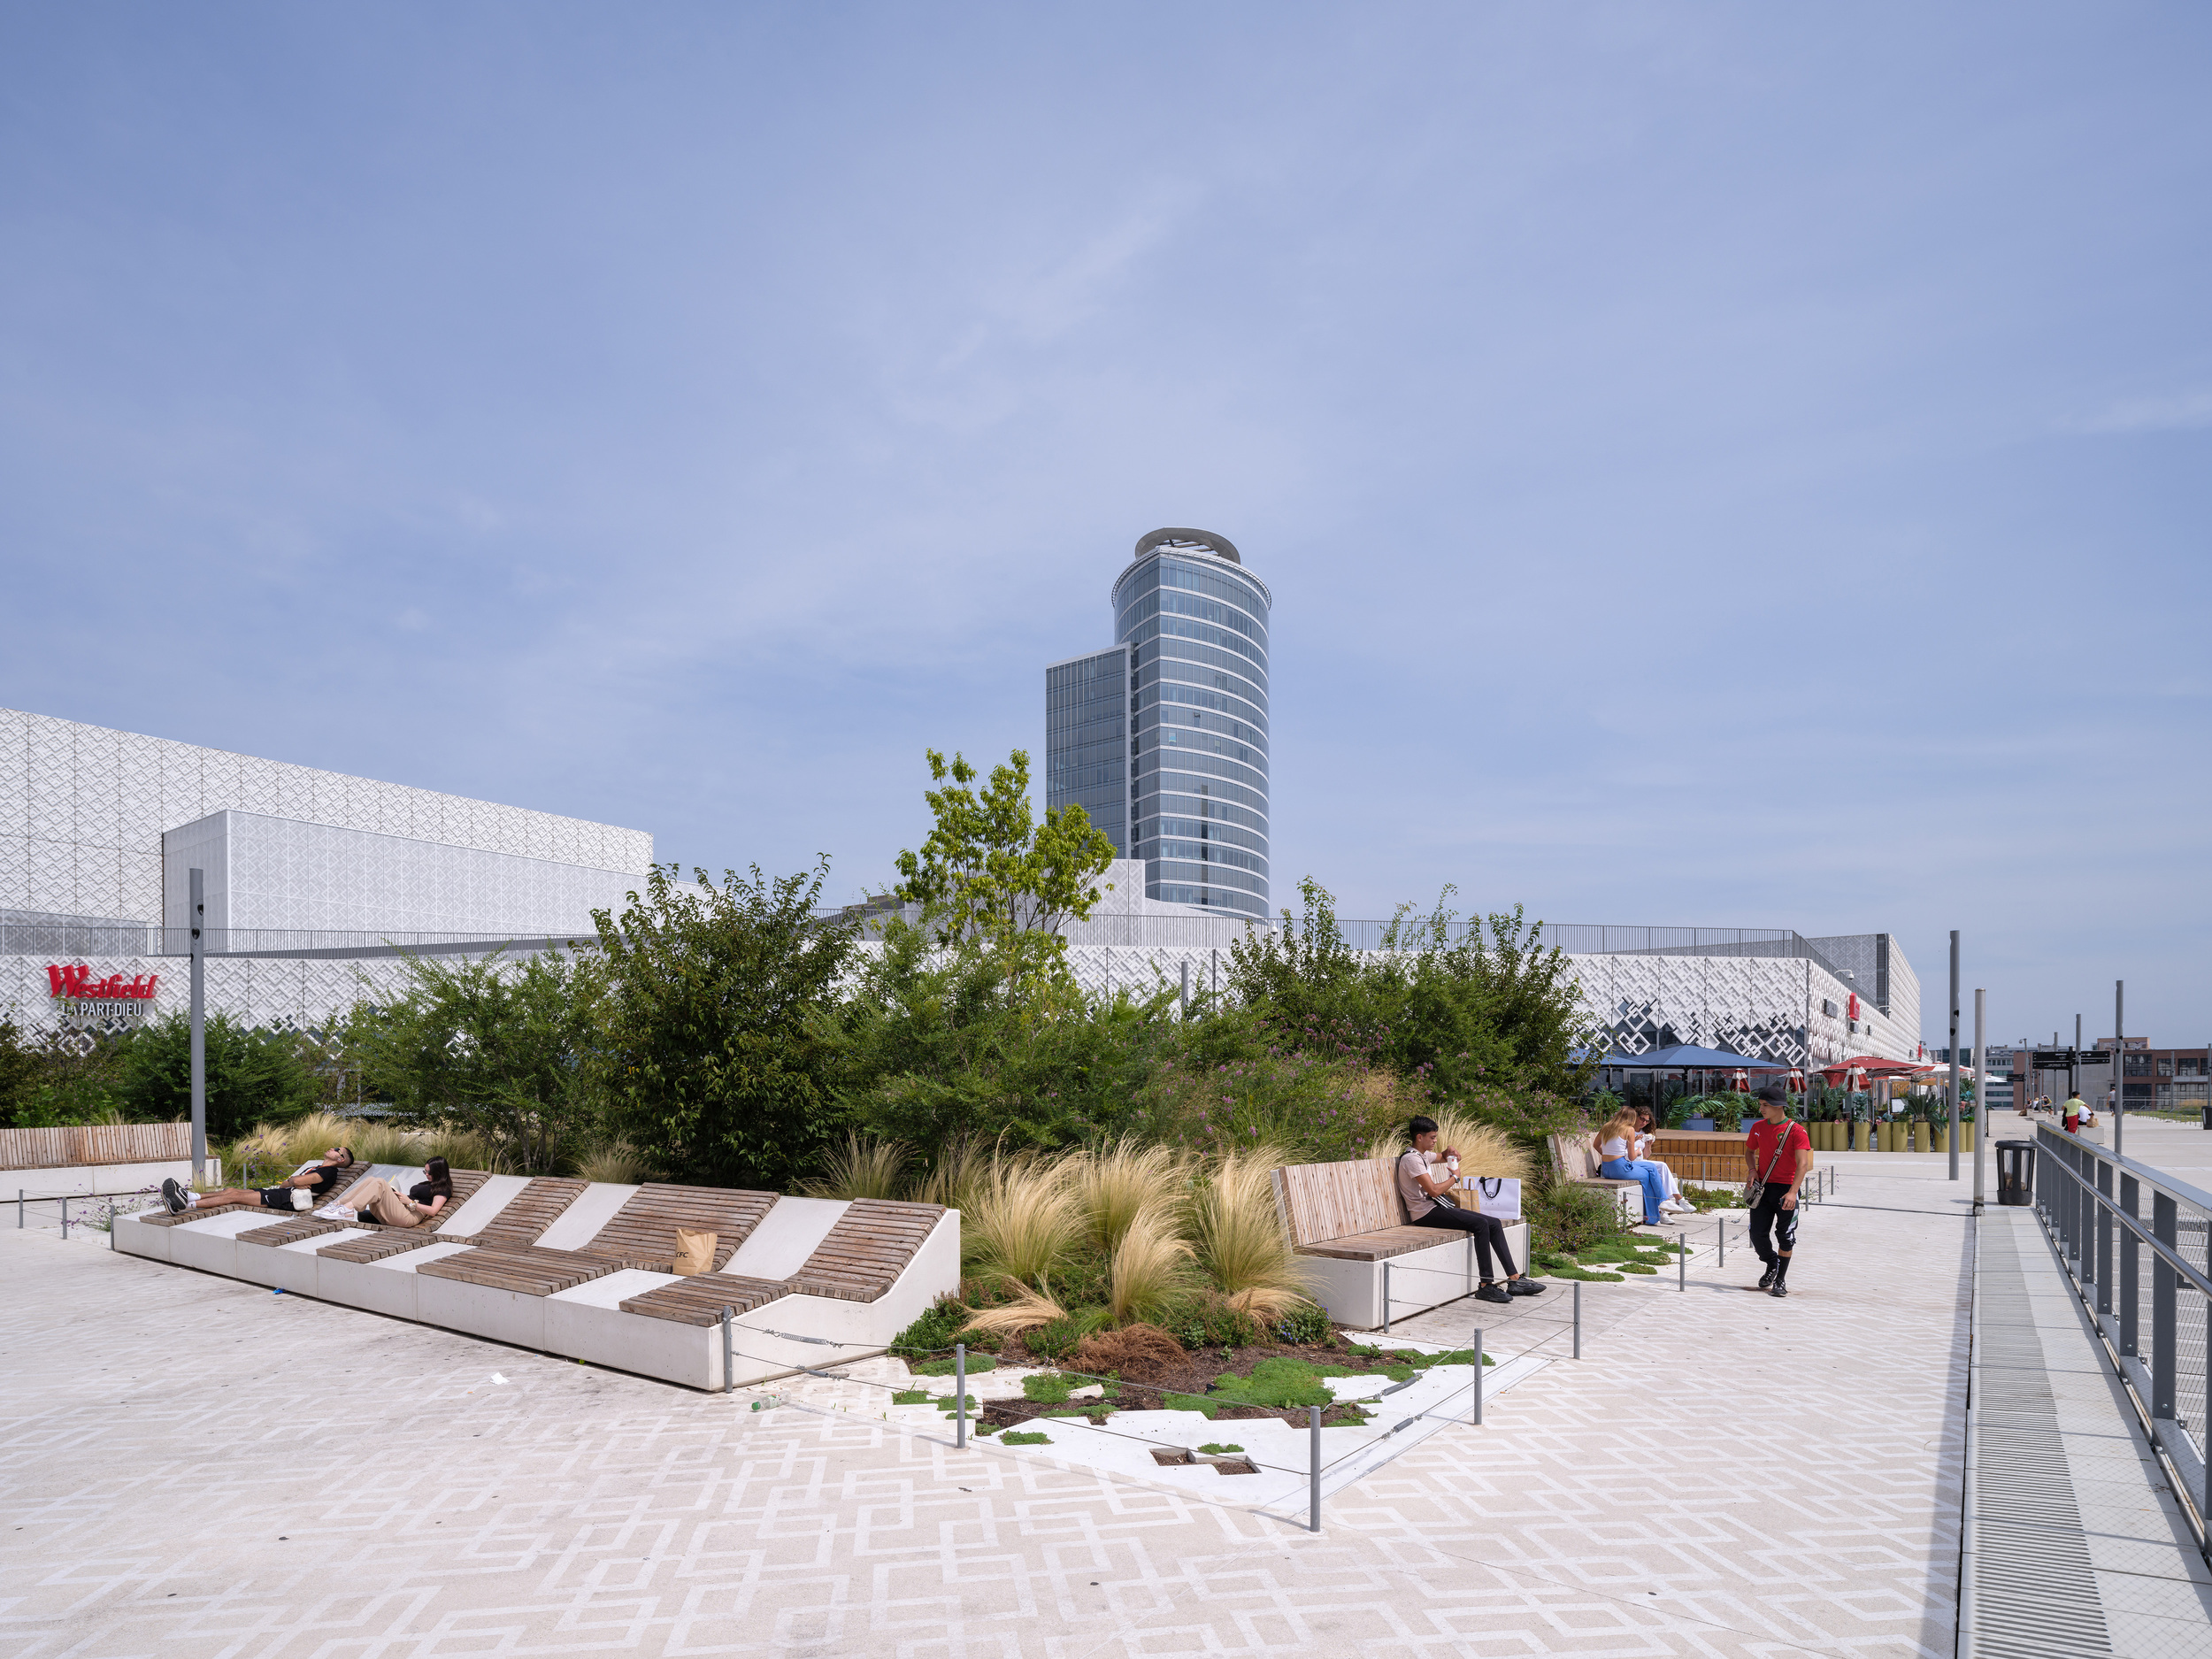 設計有各式休閒座椅、躺椅和綠景的屋頂花園，成為溝通城市生活的新公共空間。